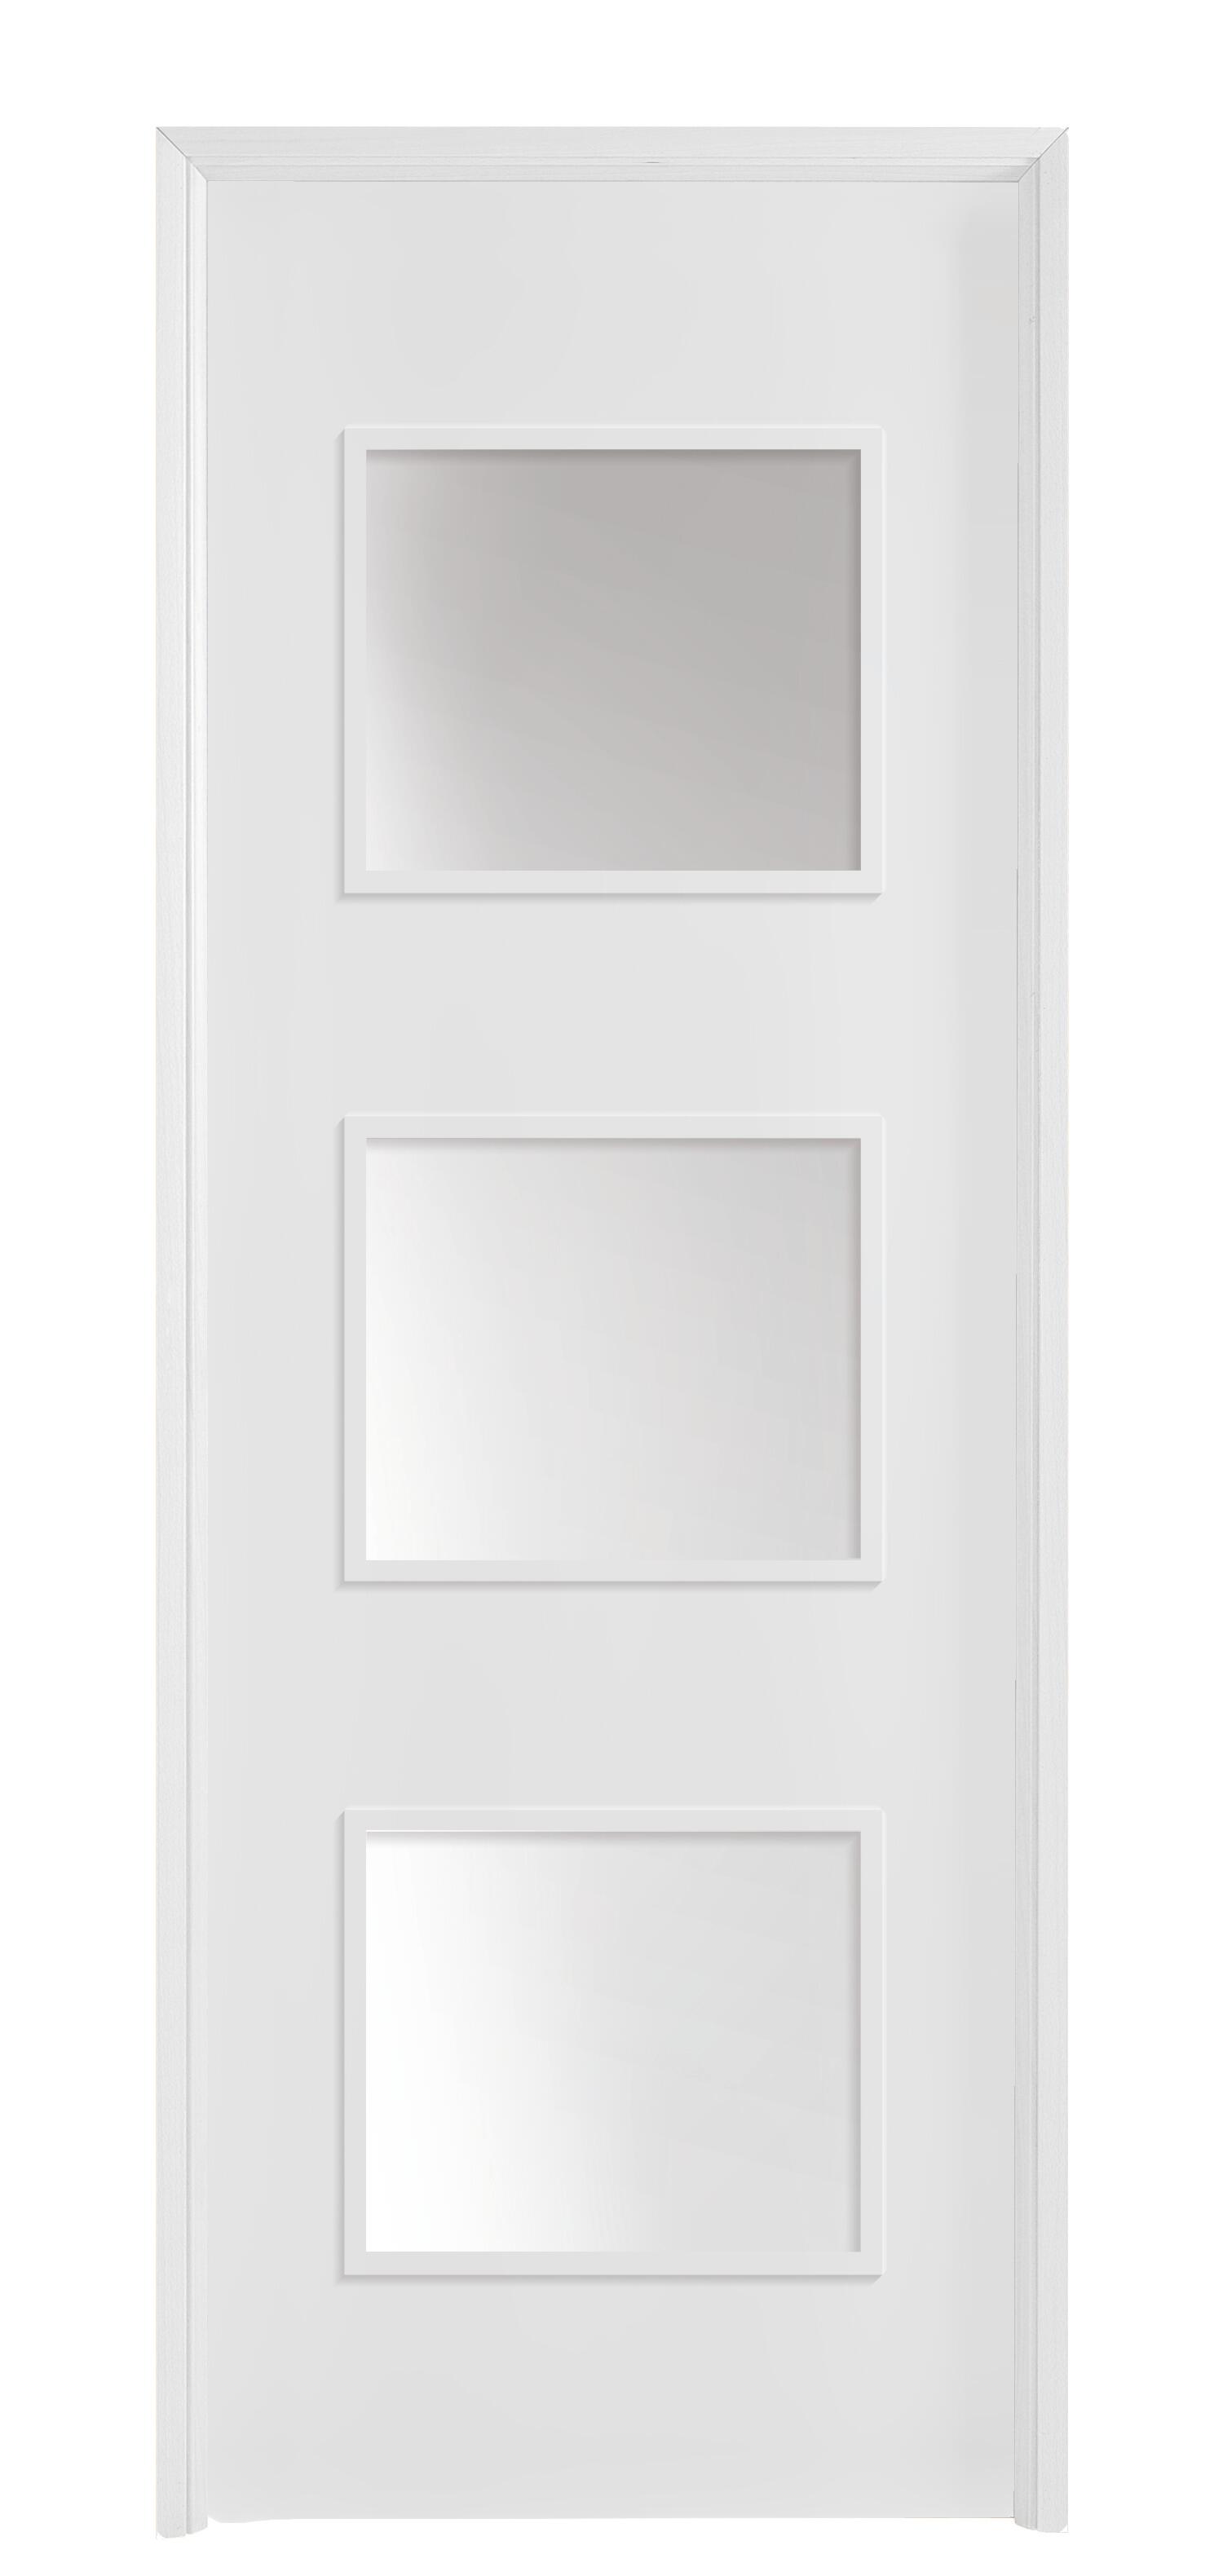 Puerta con cristal bari plus blanca 7x2x82,5 cm i